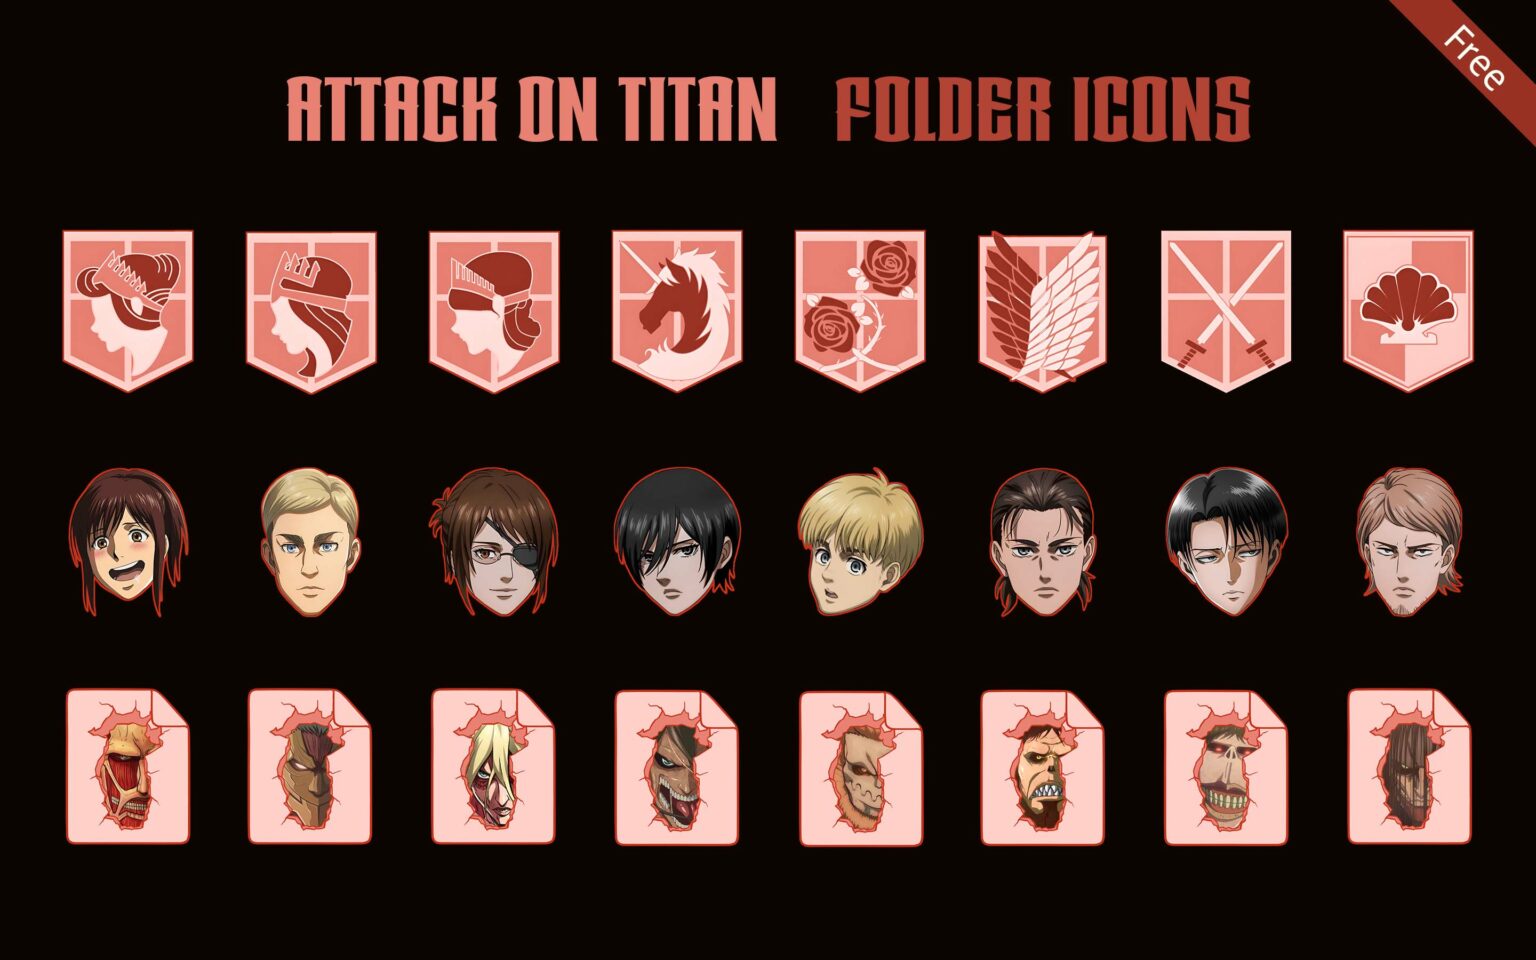 الهجوم على العمالقة (Attack on Titan) Attack-on-titan-folder-icons-1-1536x960